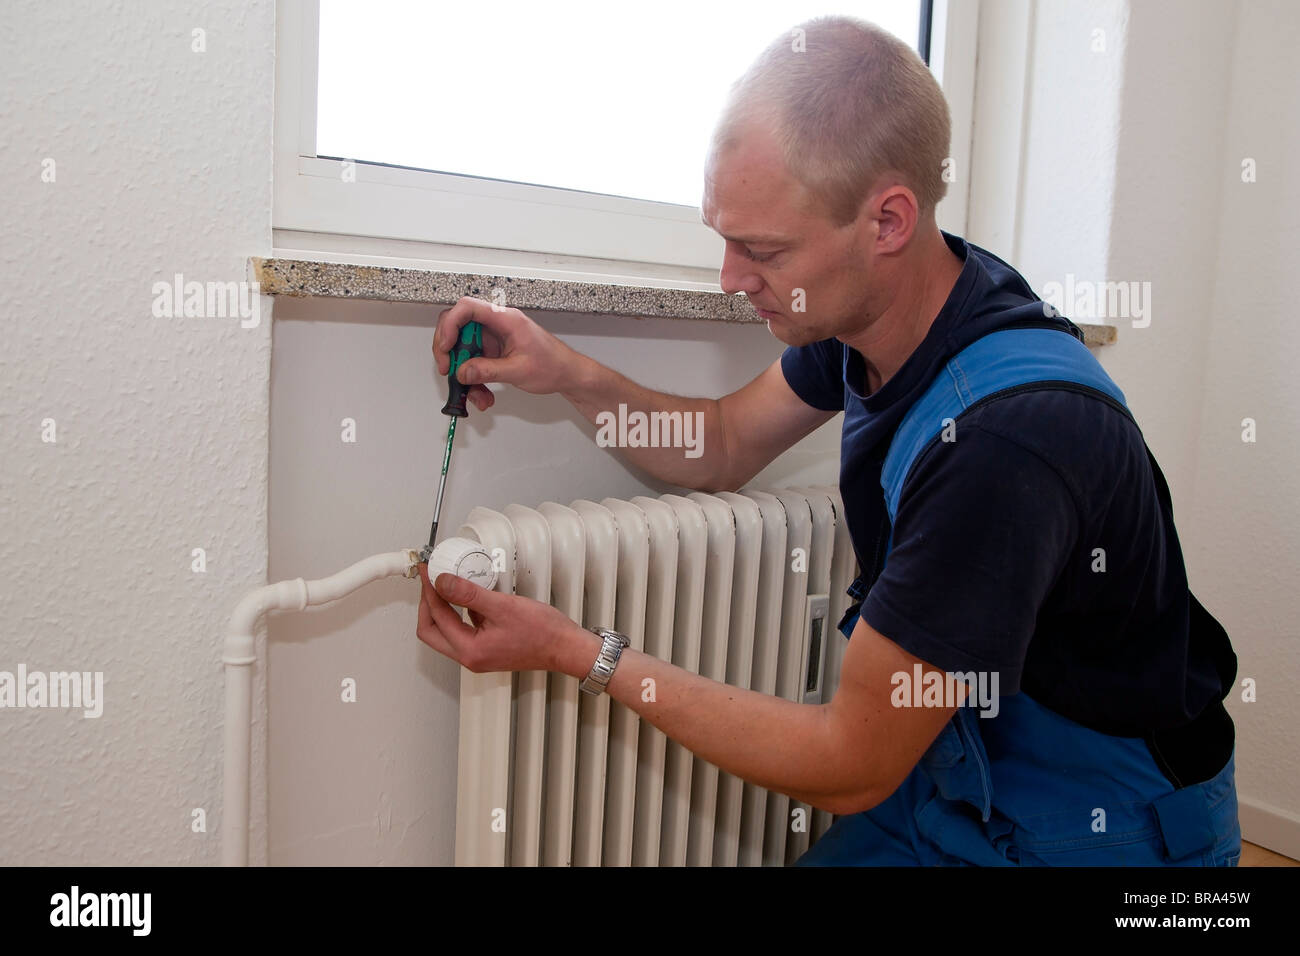 Technicien en chauffage et sanitaire réparer un robinet de radiateur thermostatiques Banque D'Images